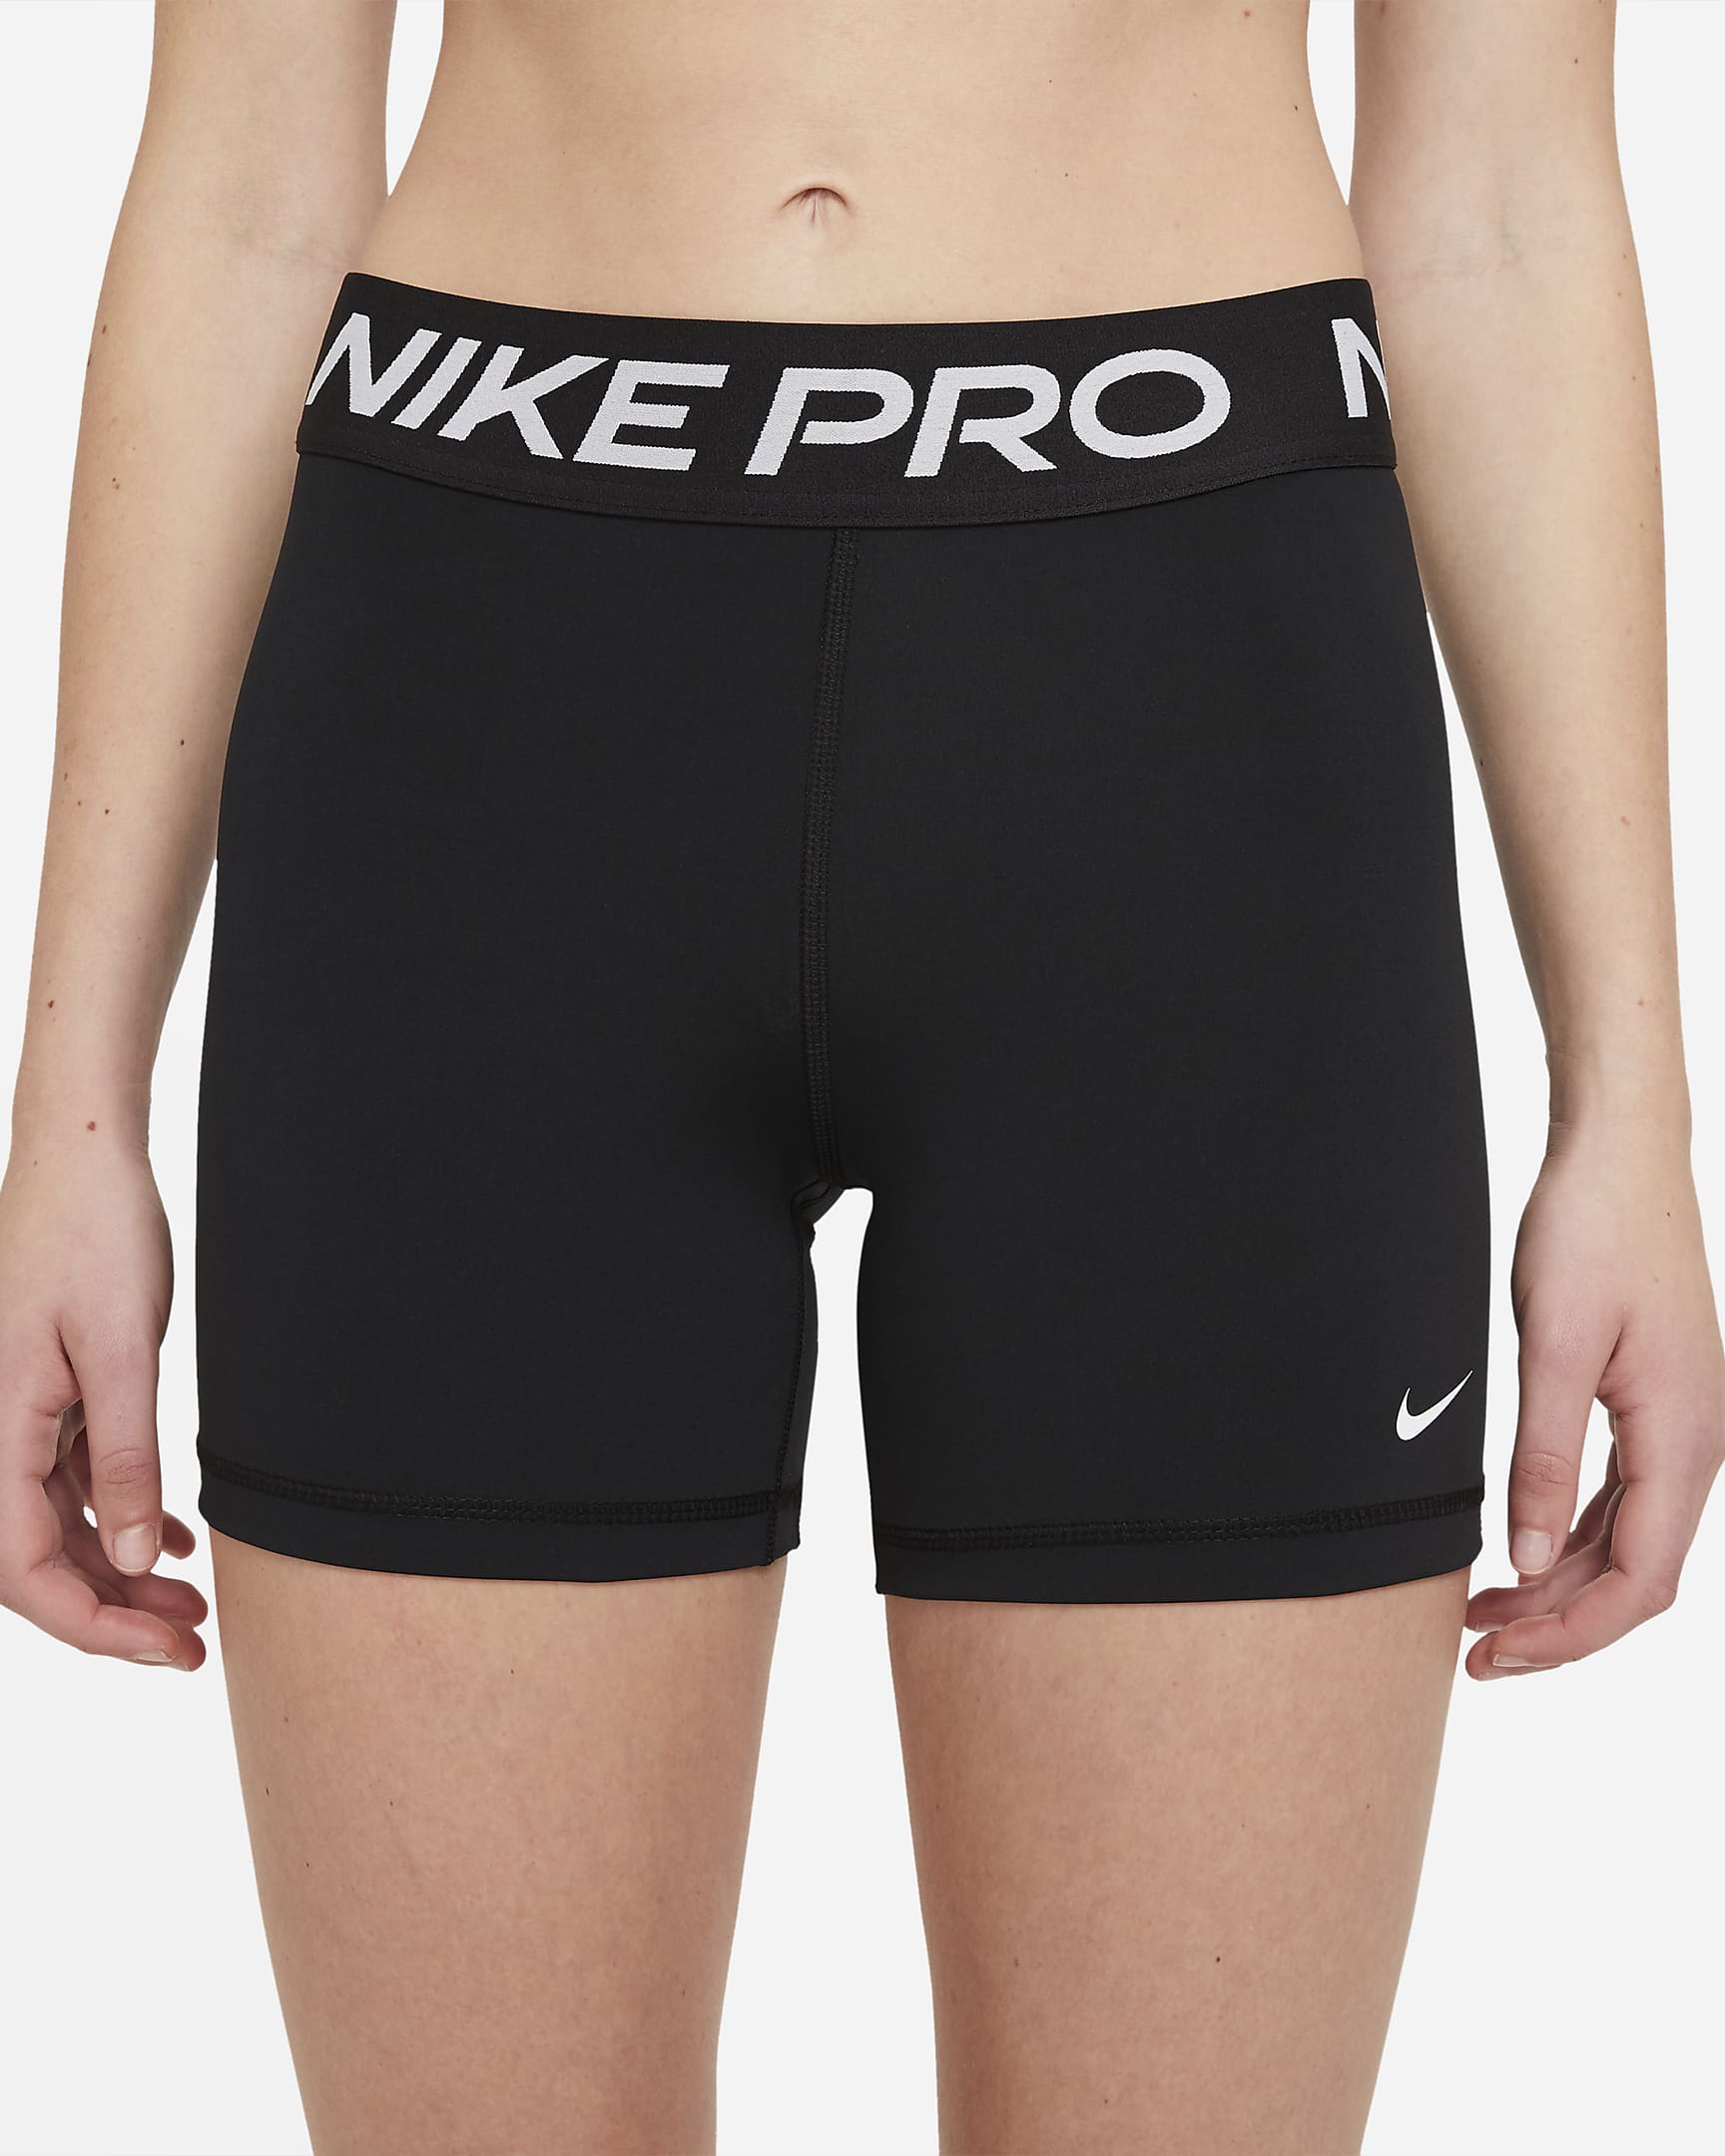 Nike Pro 365-shorts (13 cm) til kvinder - sort/hvid